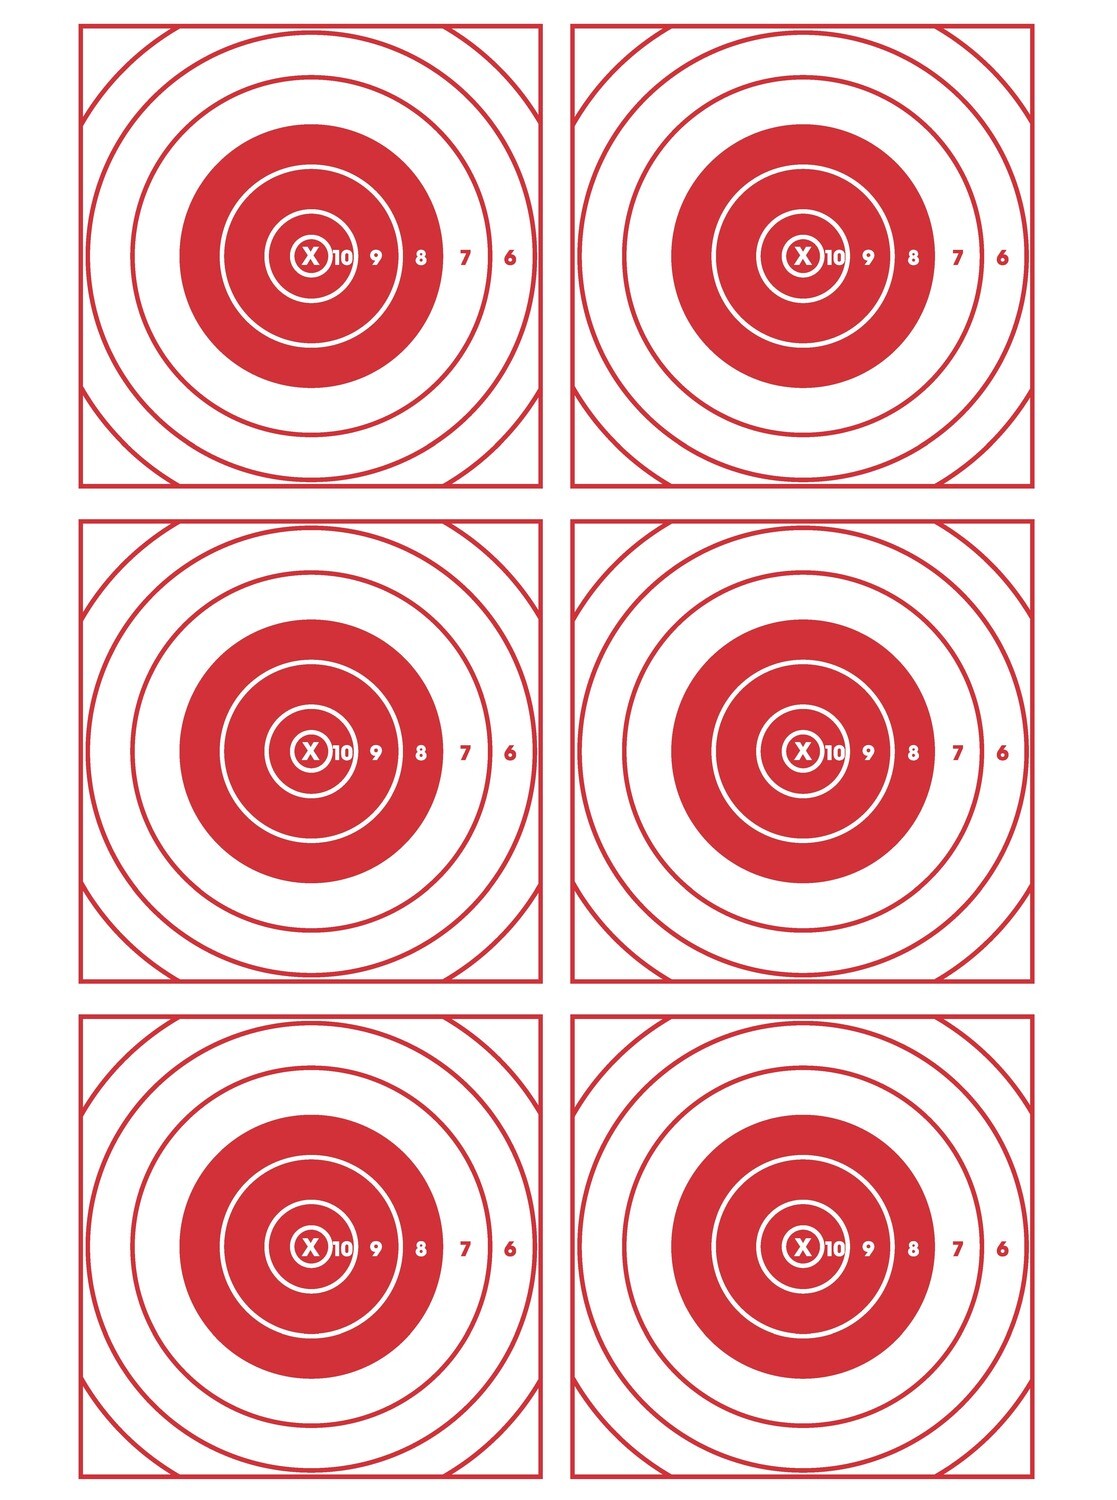 Bullseye Target 25 pack (trimmed and folded)